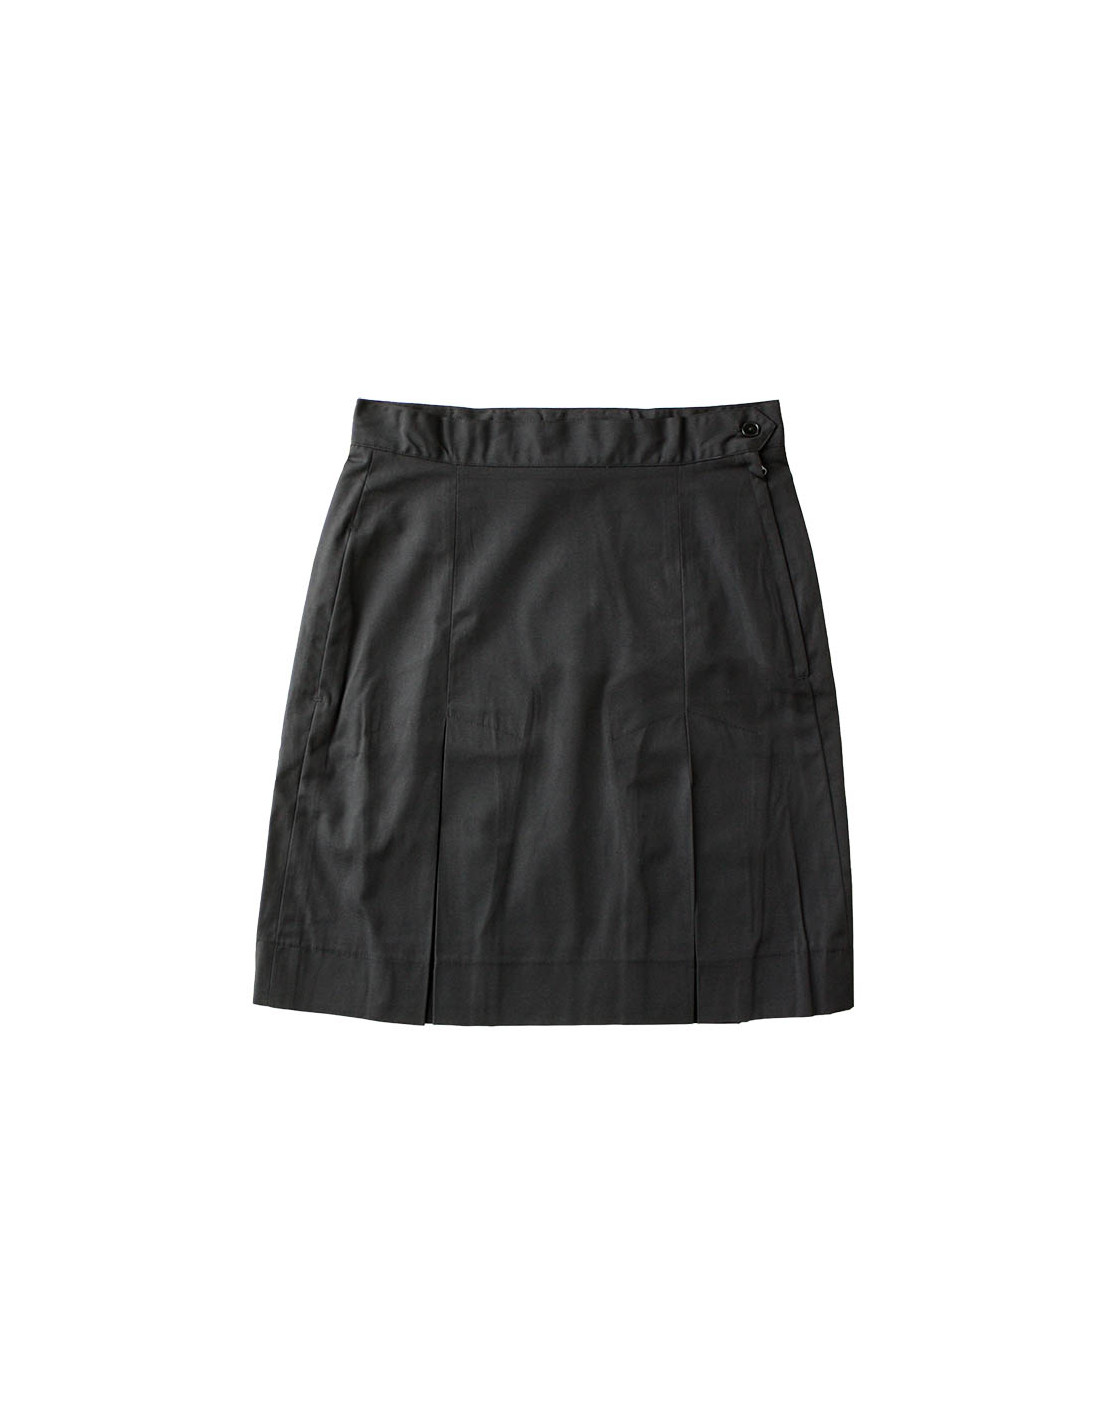 Plain Black Pleat Skirt